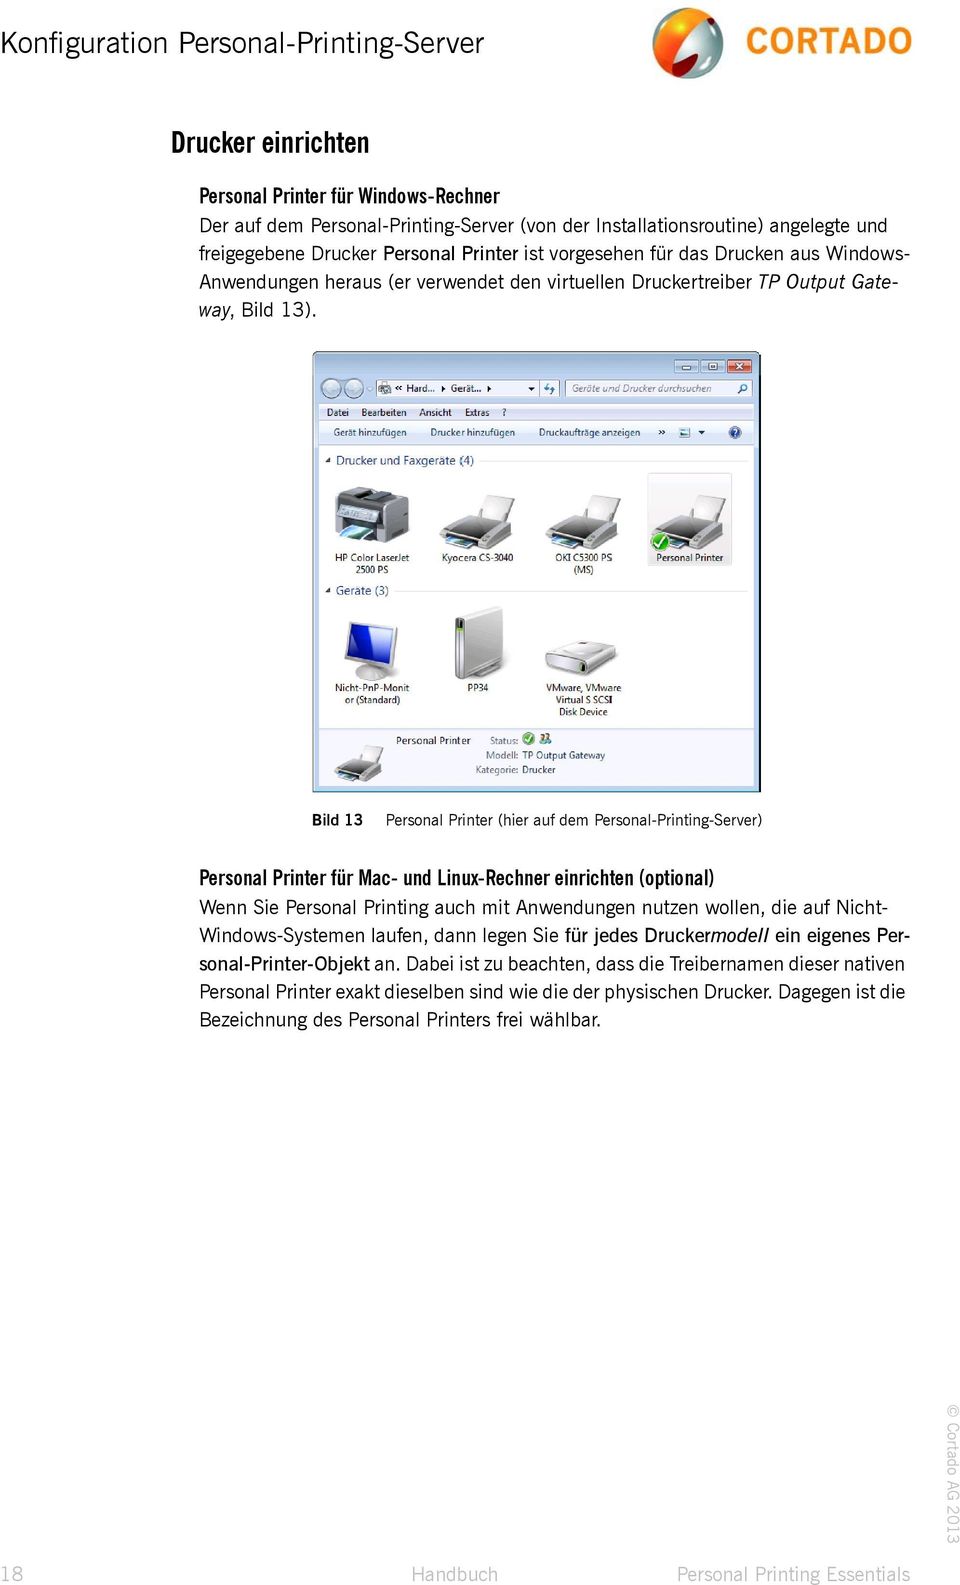 Bild 13 Bild 13 Personal Printer (hier auf dem Personal-Printing-Server) Personal Printer für Mac- und Linux-Rechner einrichten (optional) Wenn Sie Personal Printing auch mit Anwendungen nutzen